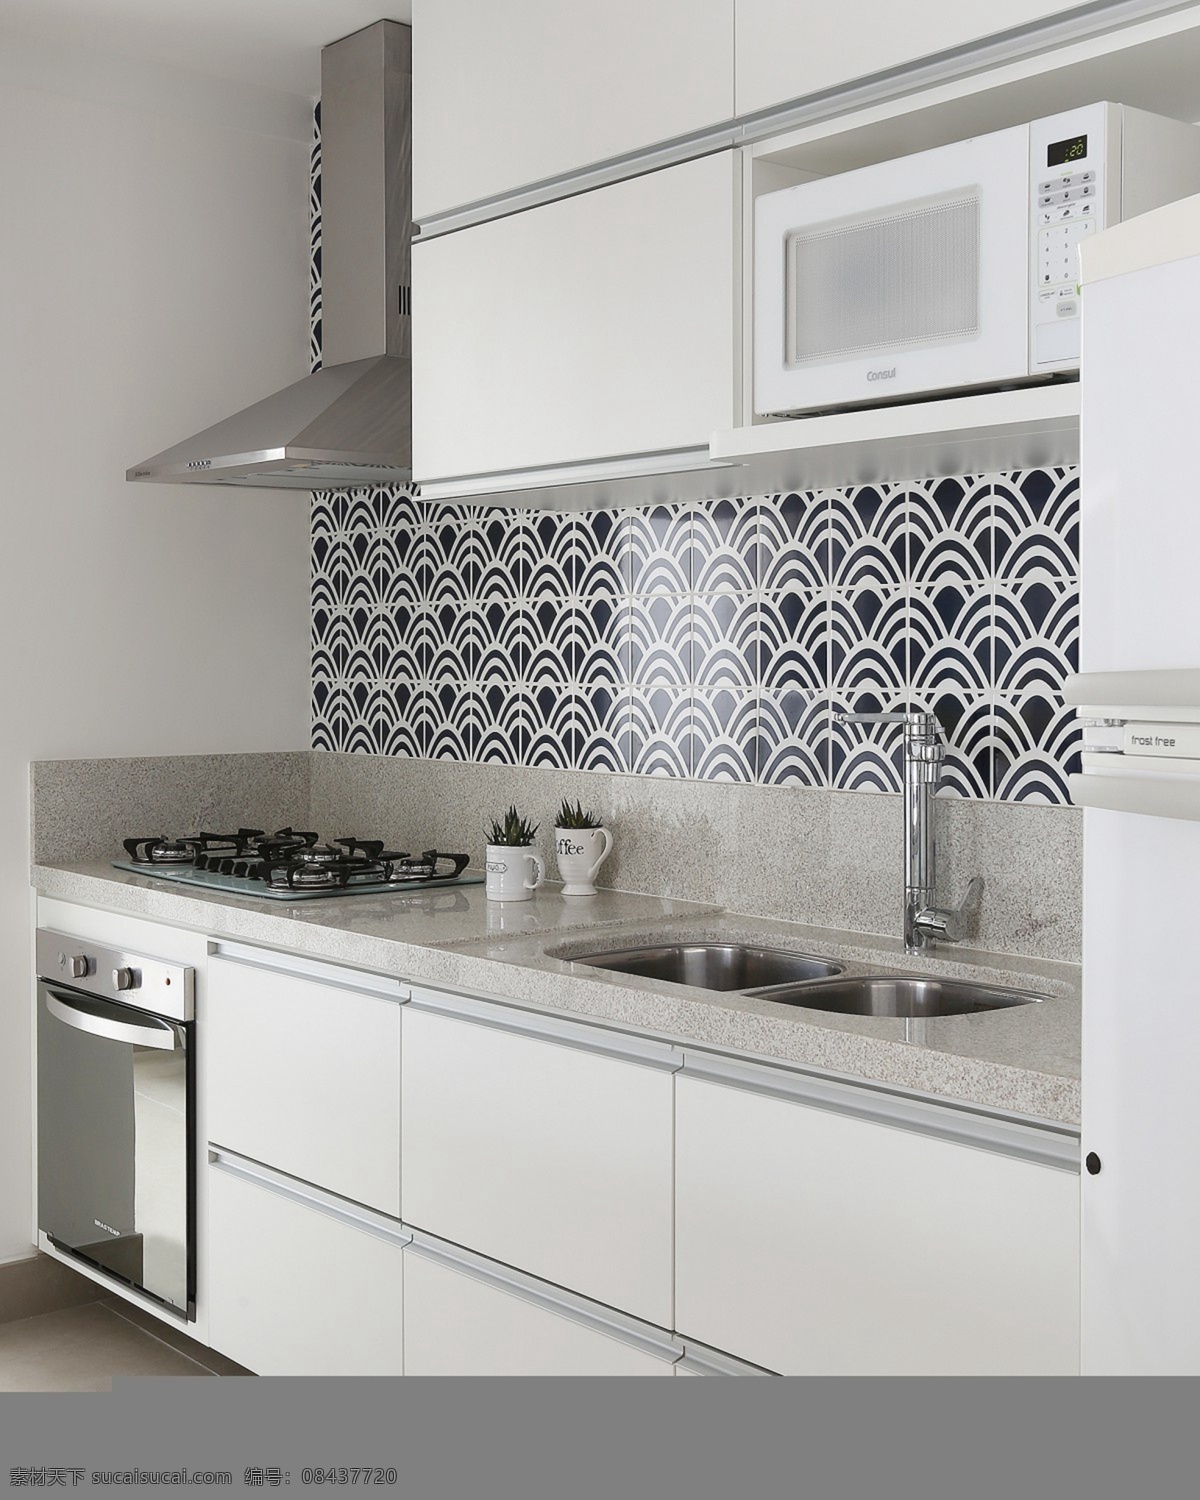 北欧 时尚 厨房 橱柜 设计图 家居 家居生活 室内设计 装修 室内 家具 装修设计 环境设计